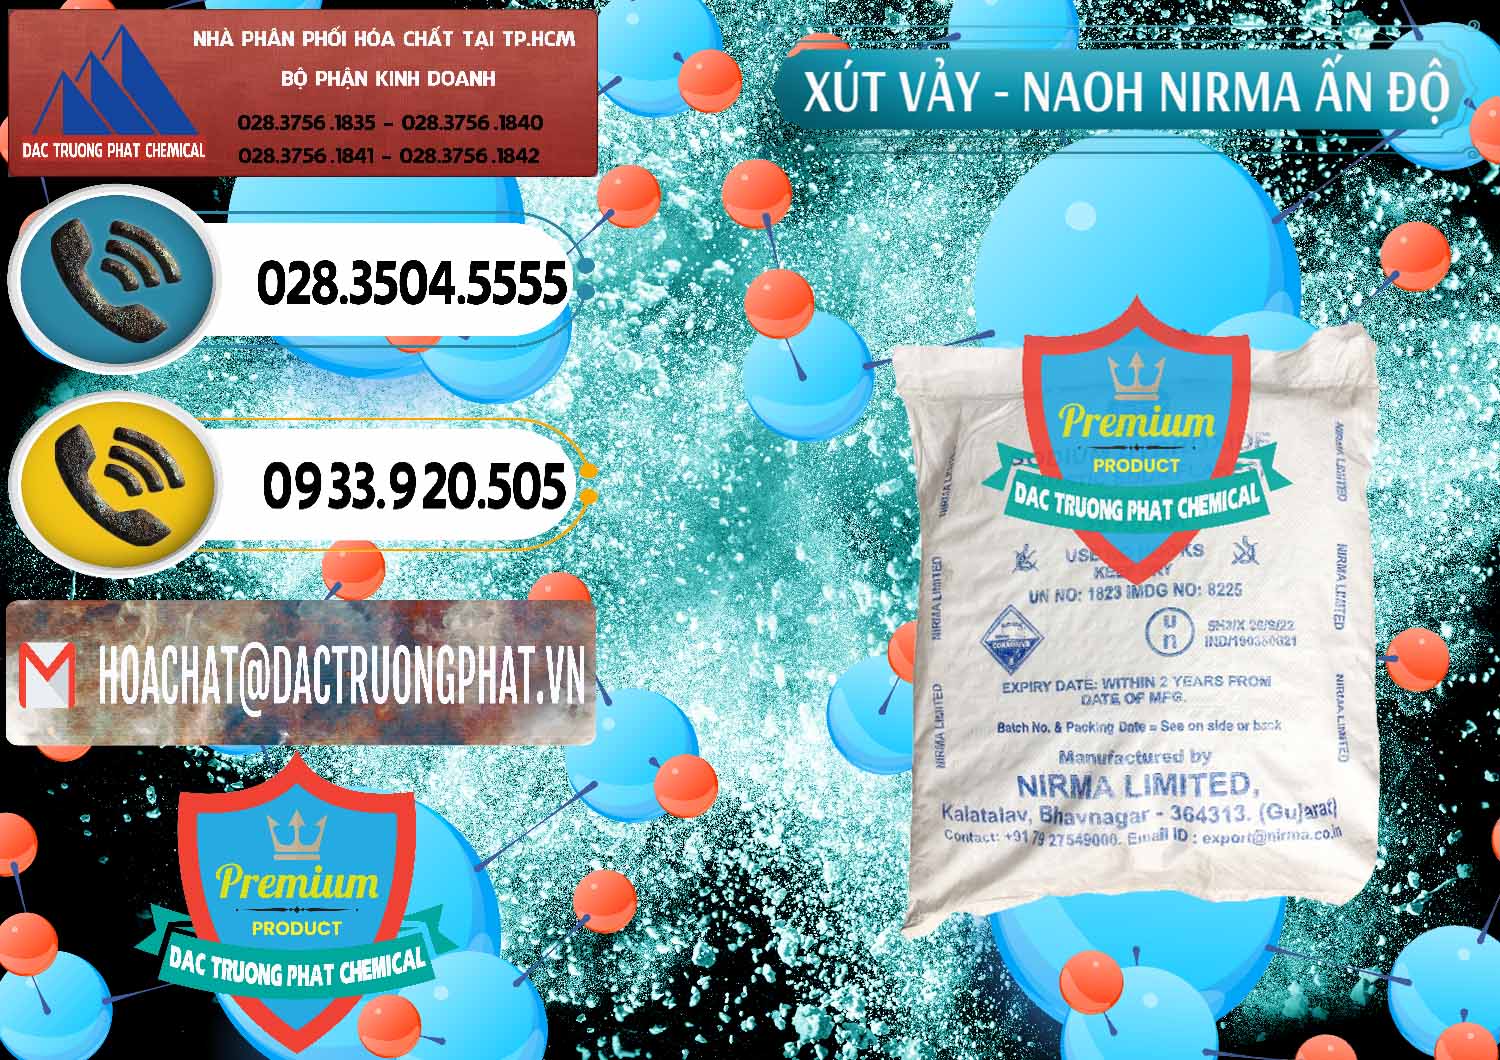 Cty chuyên bán và cung cấp Xút Vảy - NaOH Vảy Nirma Ấn Độ India - 0371 - Nhà phân phối - cung cấp hóa chất tại TP.HCM - hoachatdetnhuom.vn